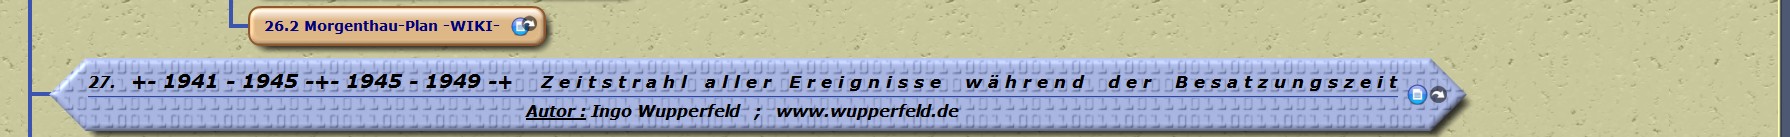 Morgenthau-Plan -WIKI- +- 1941 - 1945 -+- 1945 - 1949 -+ Z e i t s t r a h l a l l e r E r e i g n i s s e w ä h r e n d d e r B e s a t z u n g s z e i t 

Autor : Ingo Wupperfeld ; www.wupperfeld.de